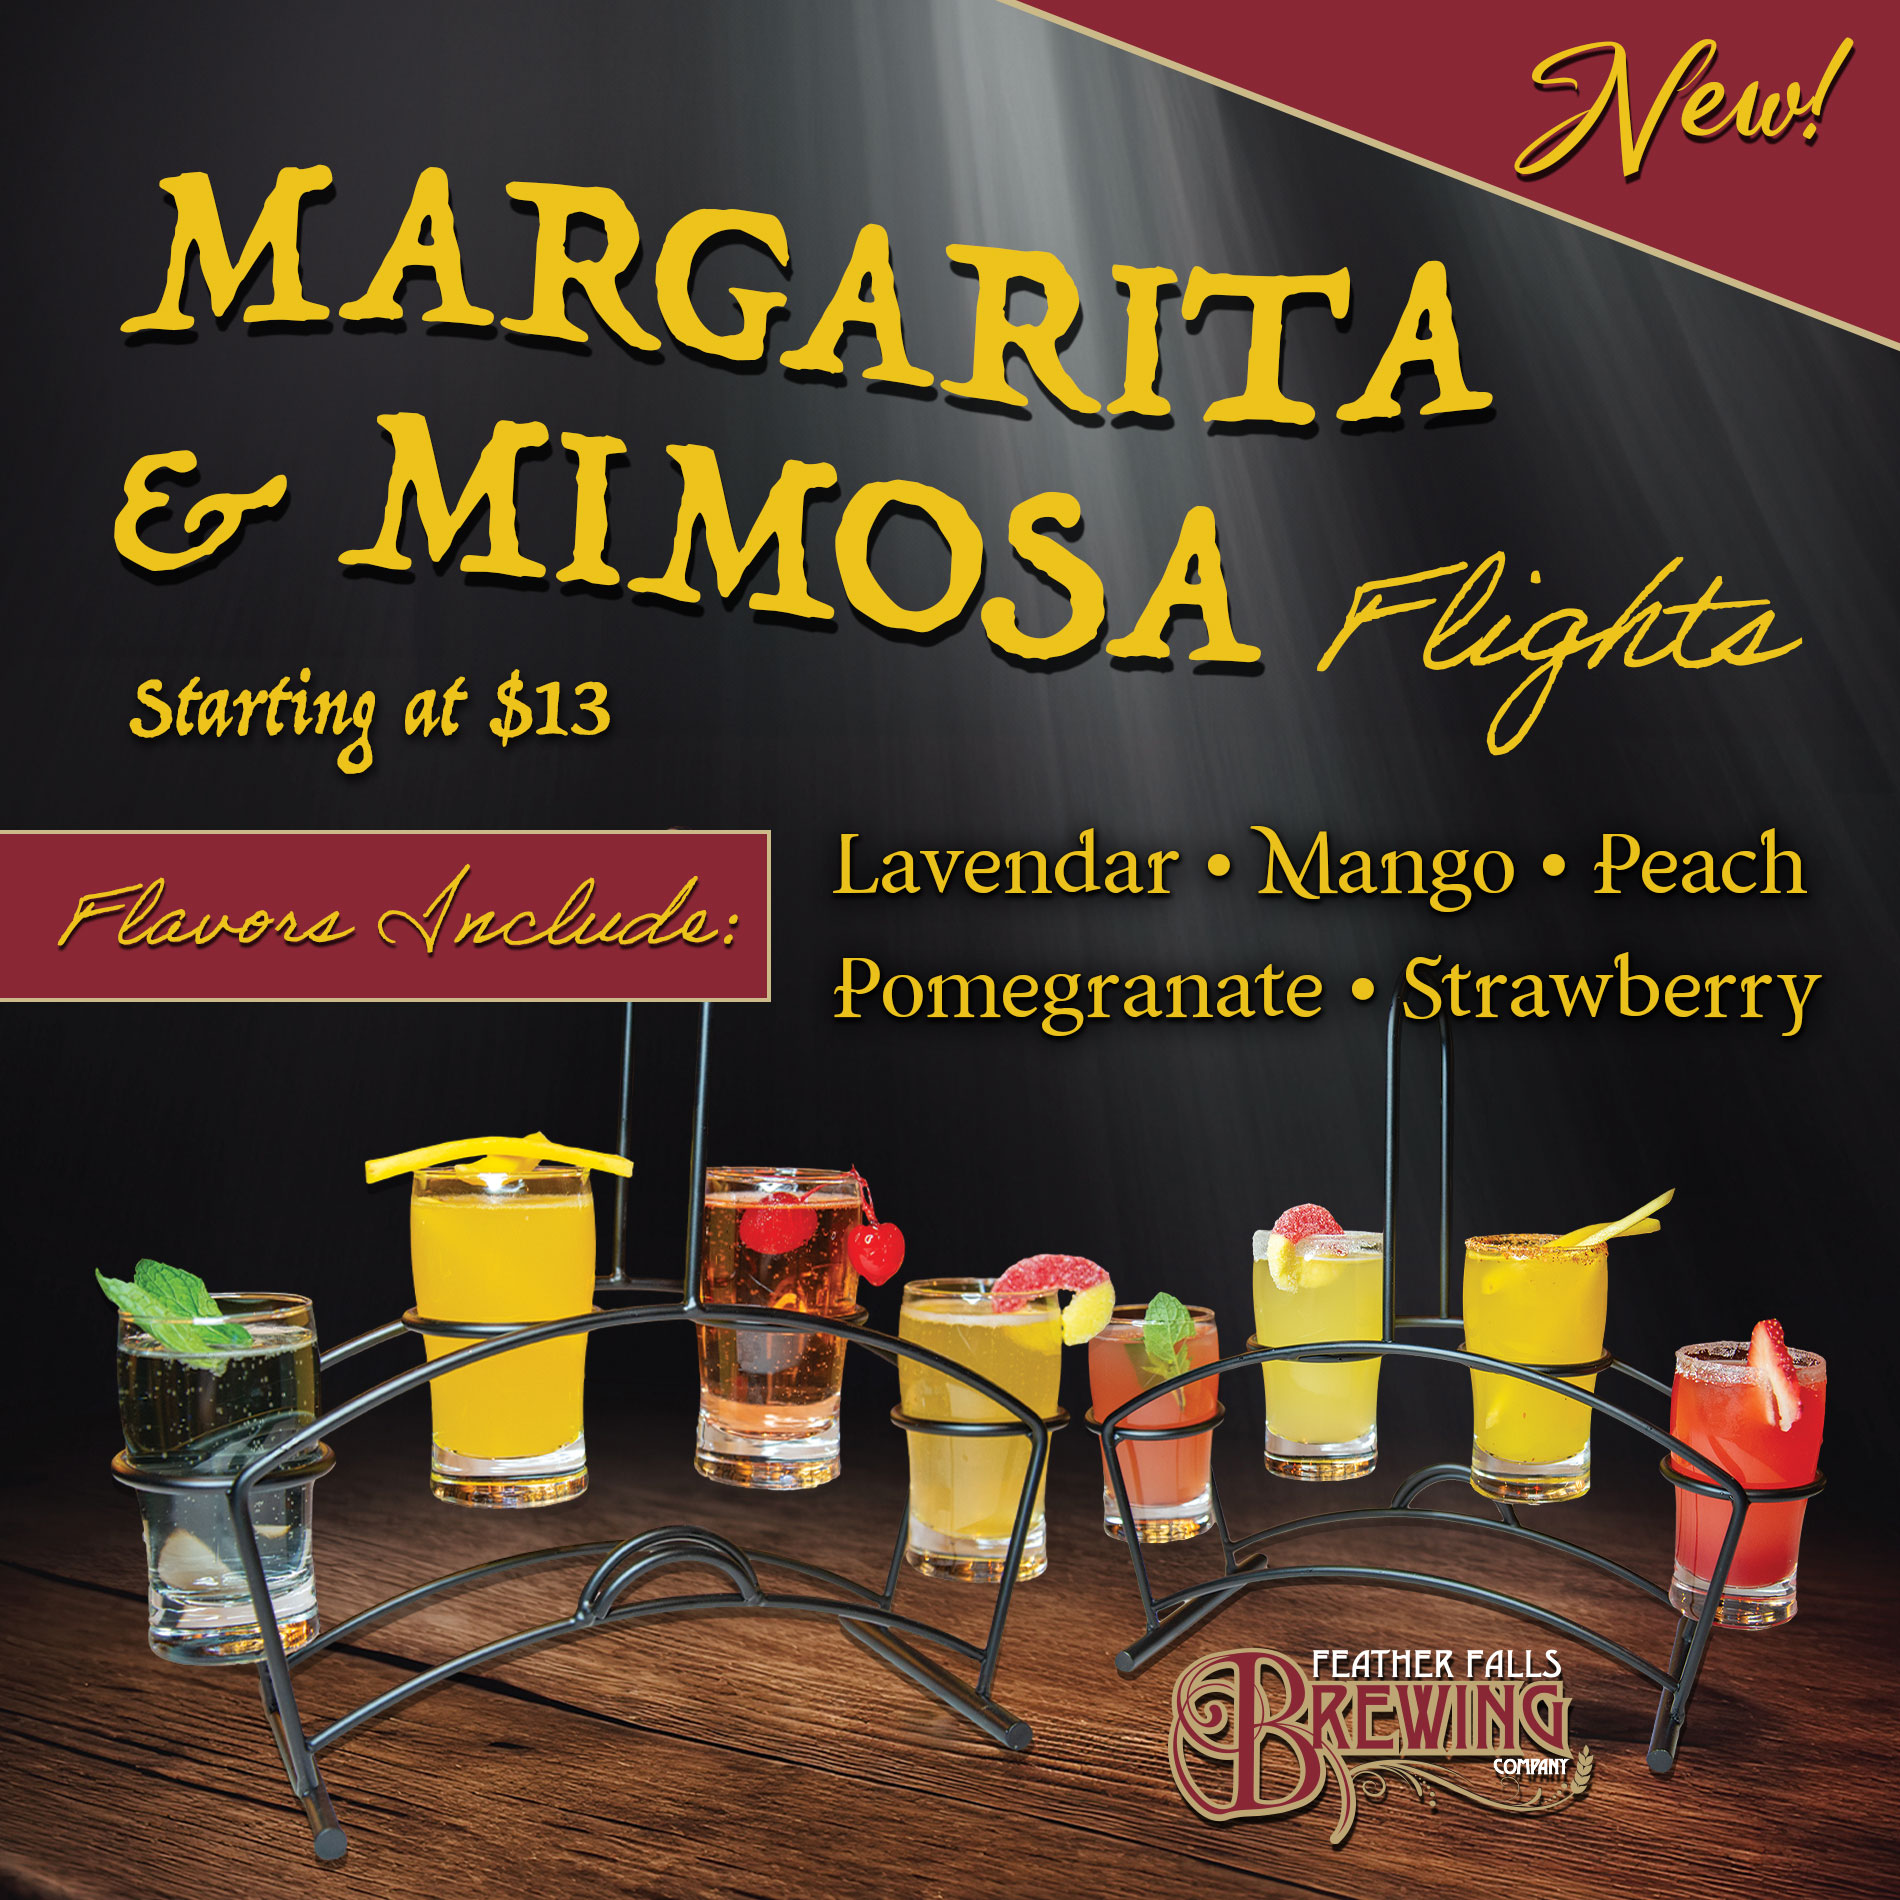 Margarita & Mimosa Flights